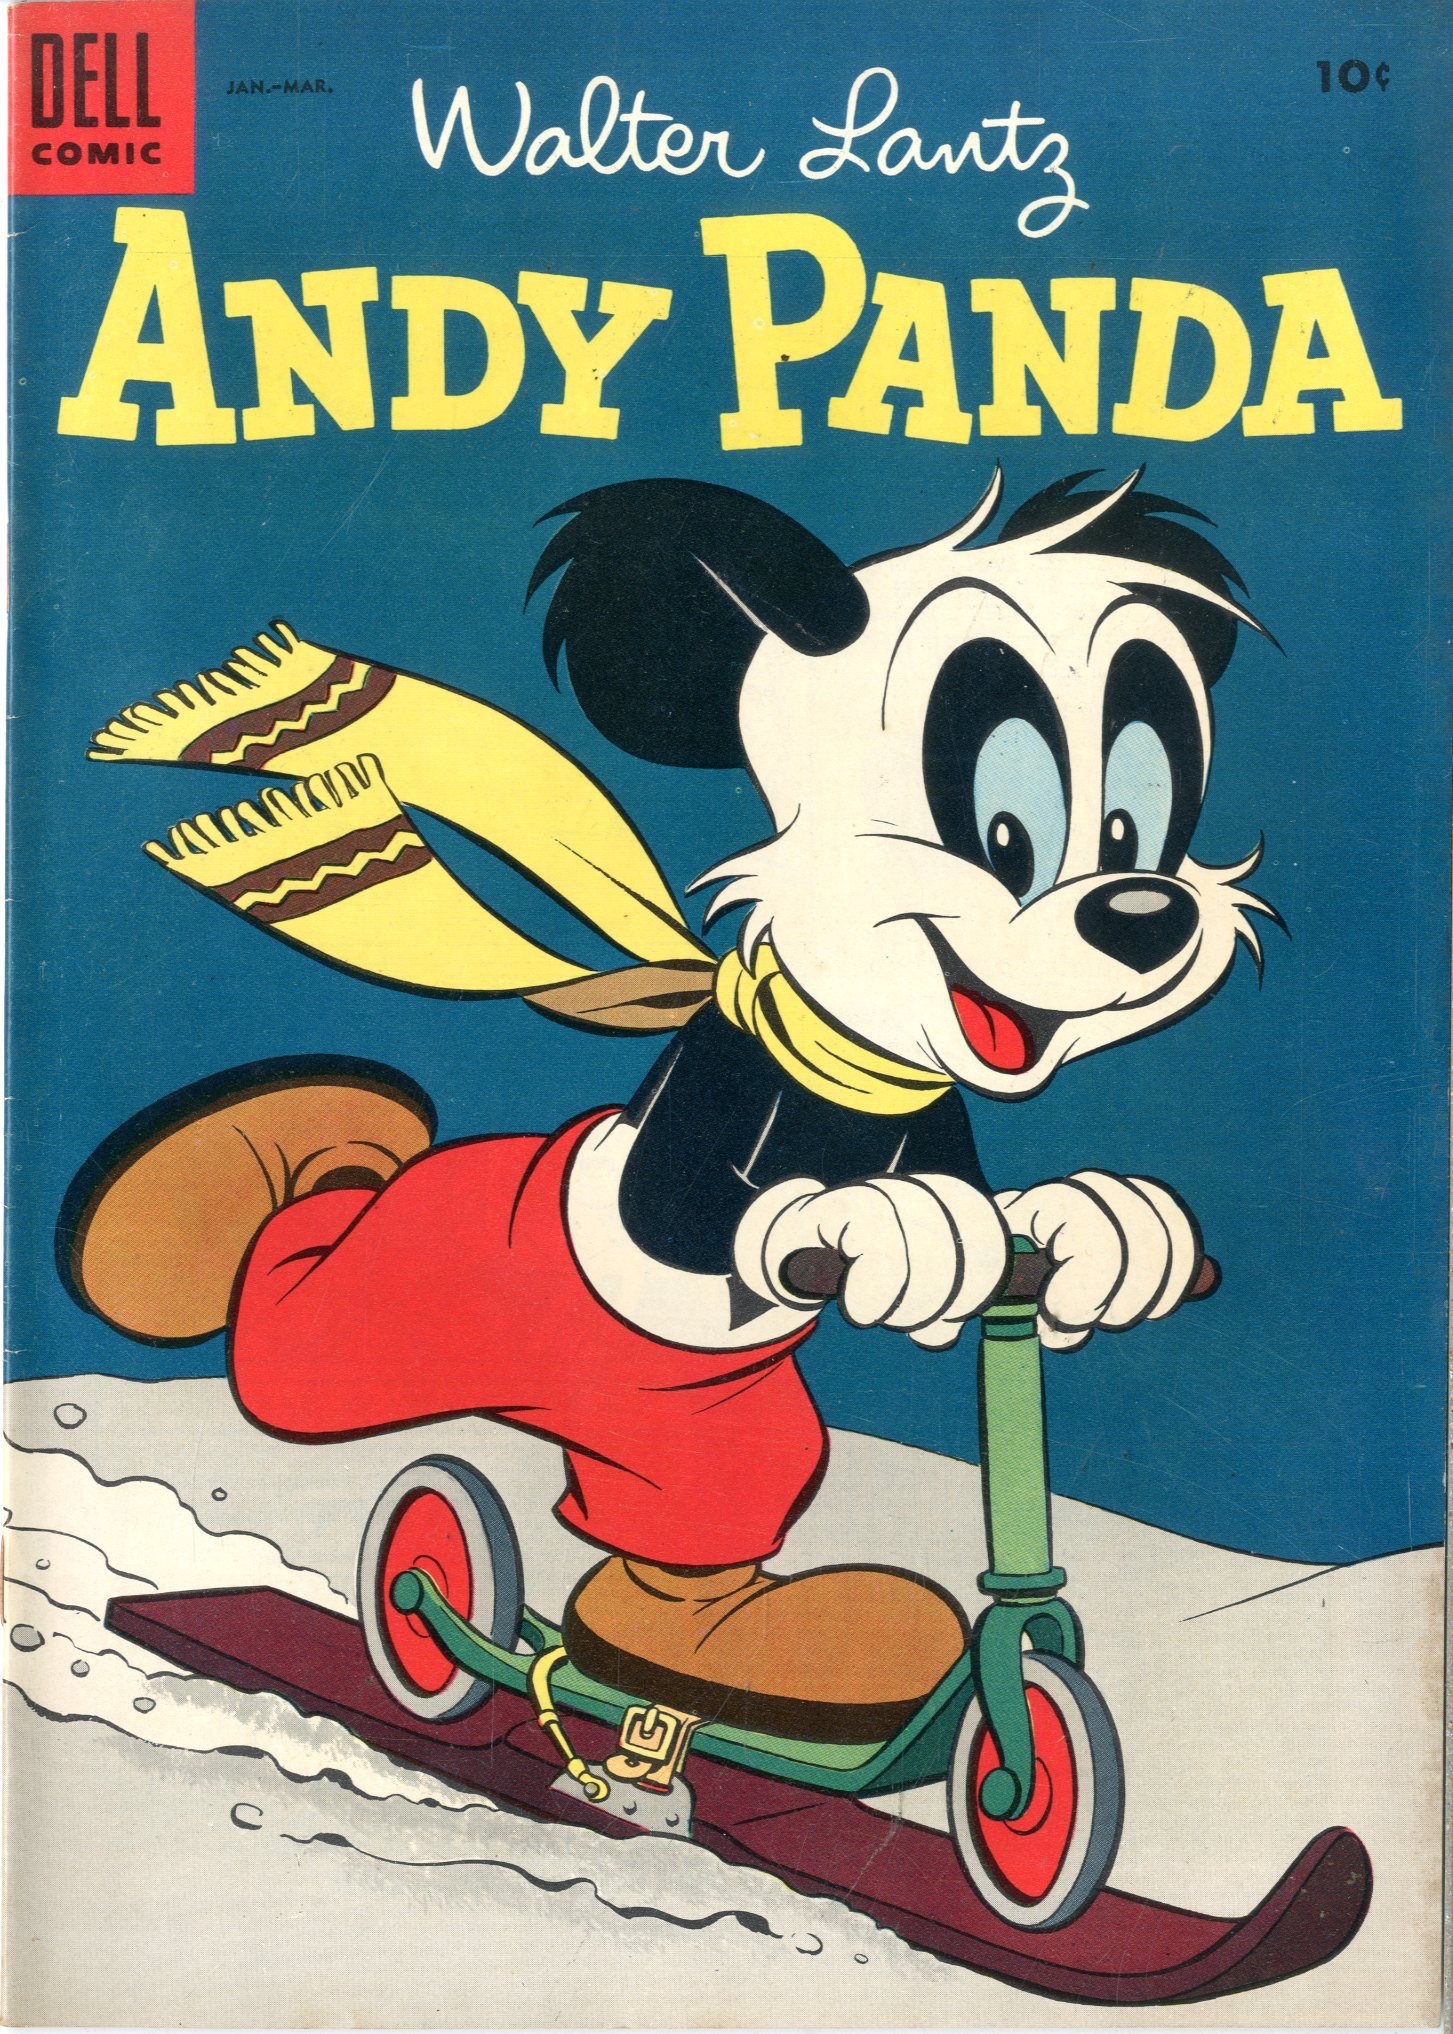 Включи энди панда. Энди Панда. Andy Panda 1948. Энди Панда комиксы.